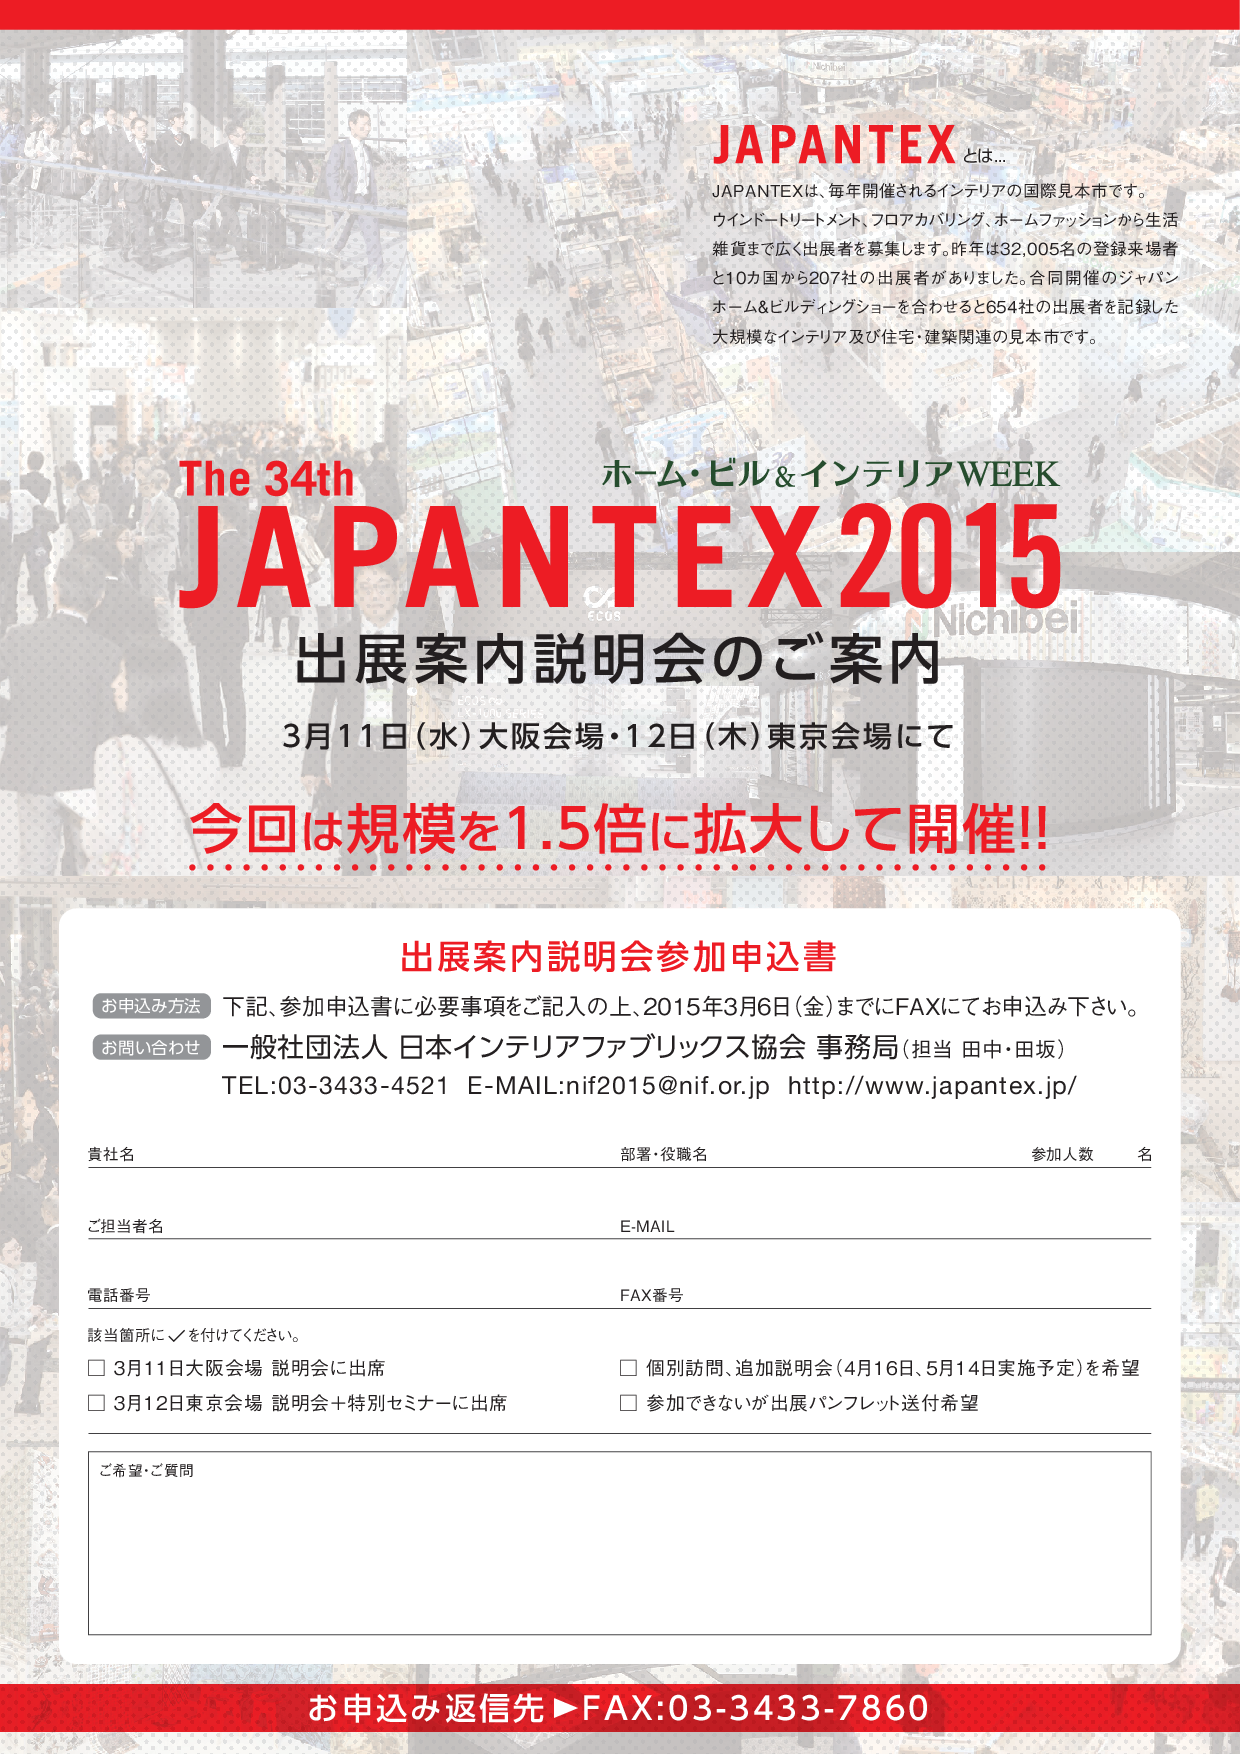 JAPANTEX 2015 出展案内説明会のご案内